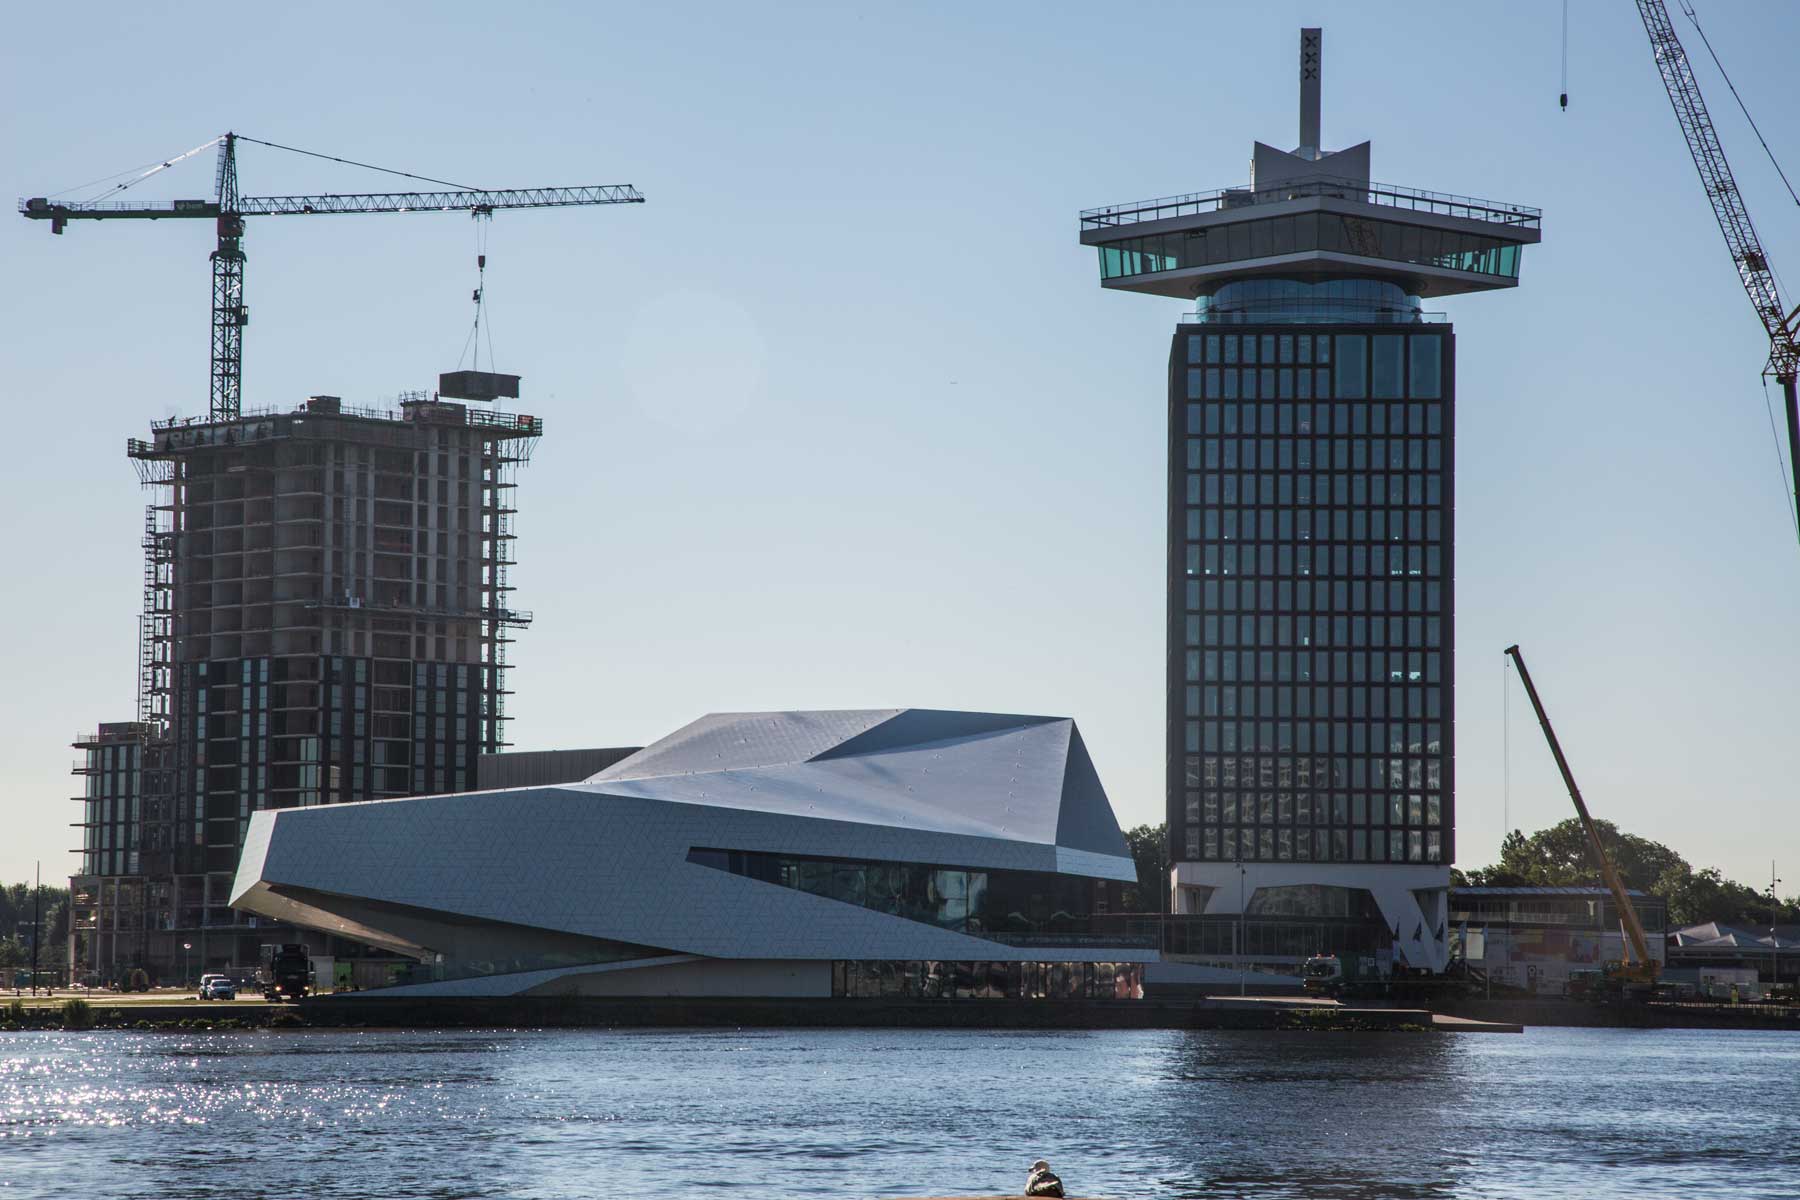 Middenhuur: Amsterdam treft voorbereidingen om ‘vrije’ sector te reguleren